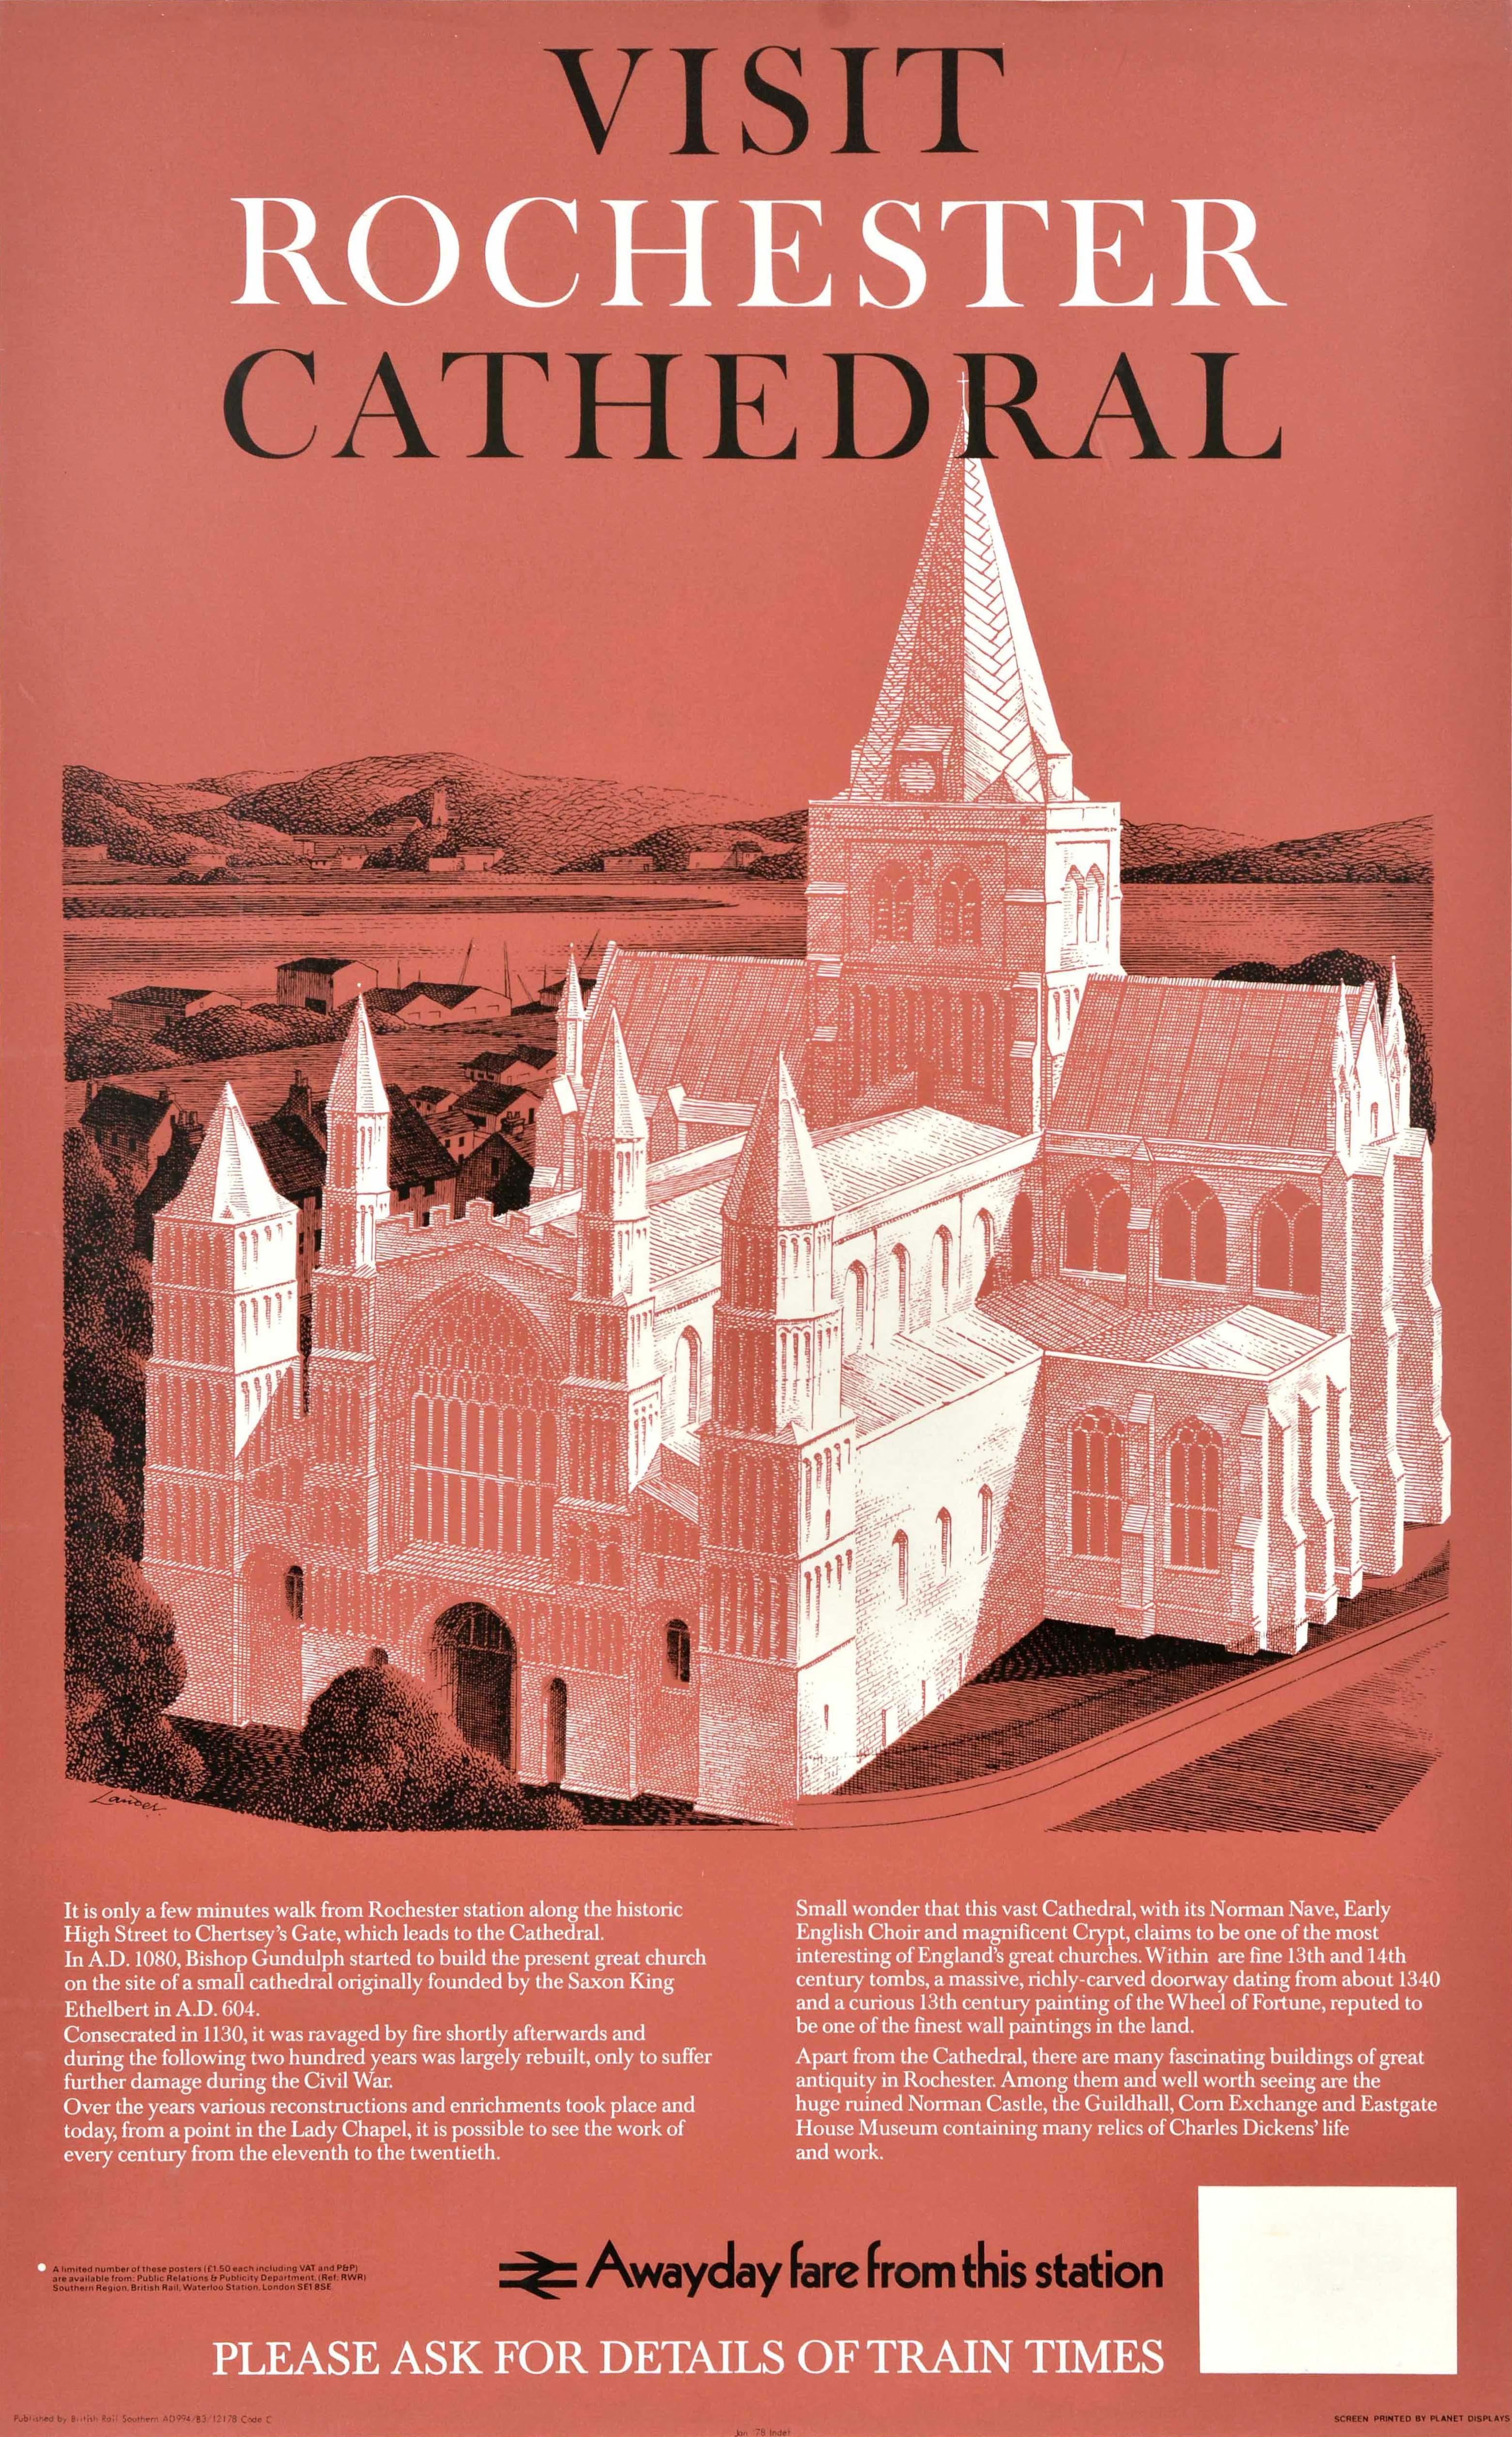 Print Reginald Lander - Affiche rétro originale de voyage en train, cathédrale de Rochester et plateau de chemin de fer britannique